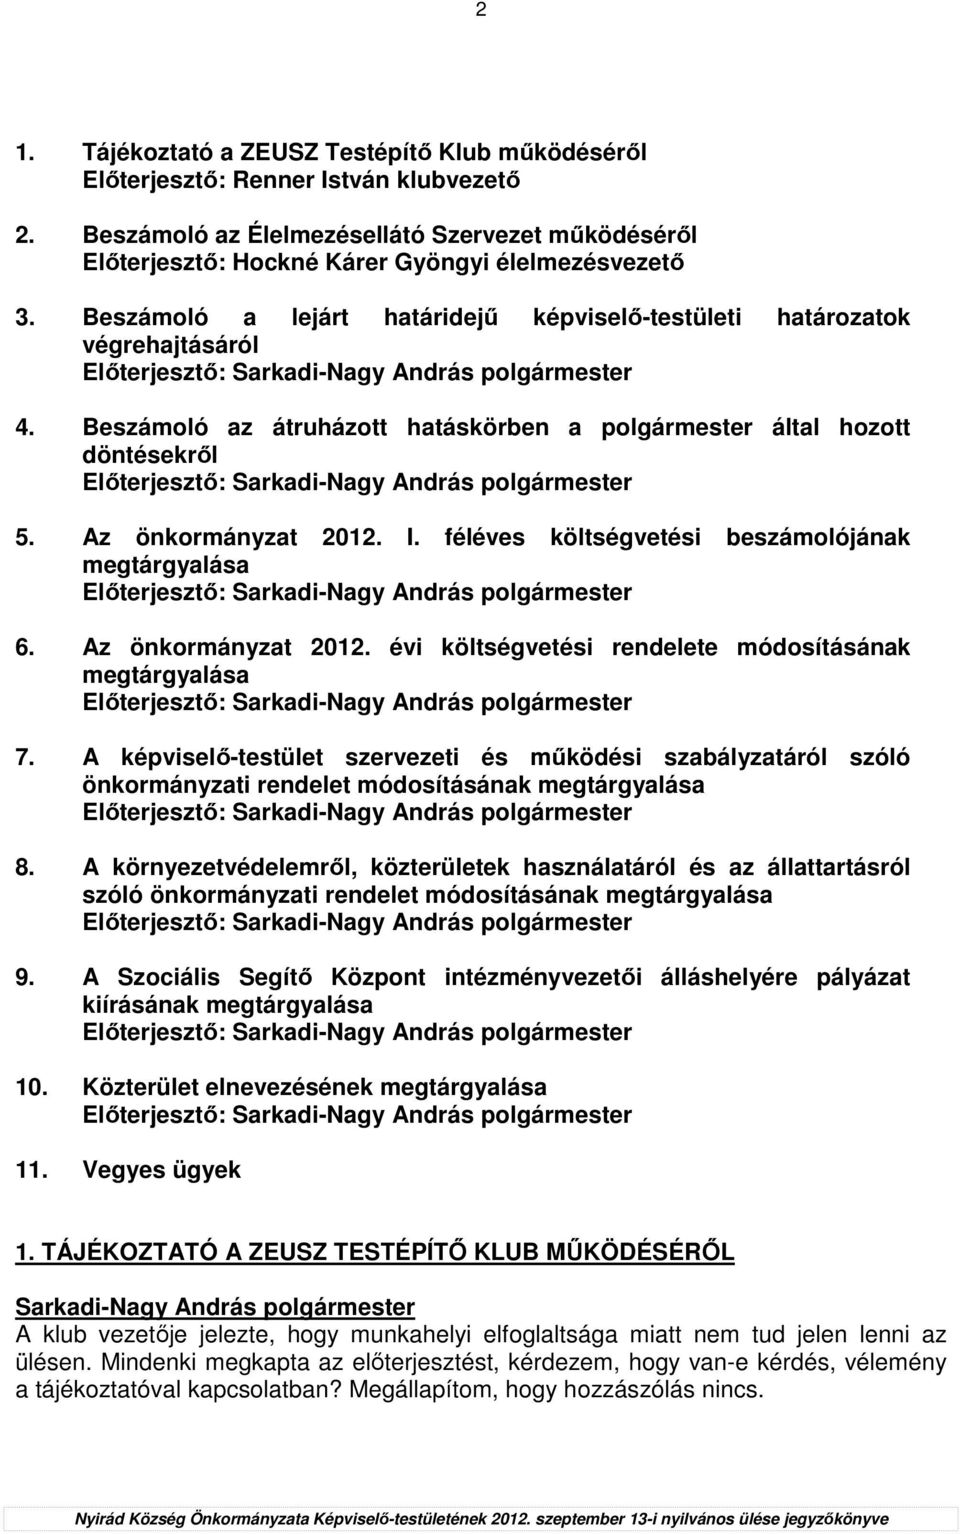 Az önkormányzat 2012. I. féléves költségvetési beszámolójának megtárgyalása Elıterjesztı: 6. Az önkormányzat 2012. évi költségvetési rendelete módosításának megtárgyalása Elıterjesztı: 7.